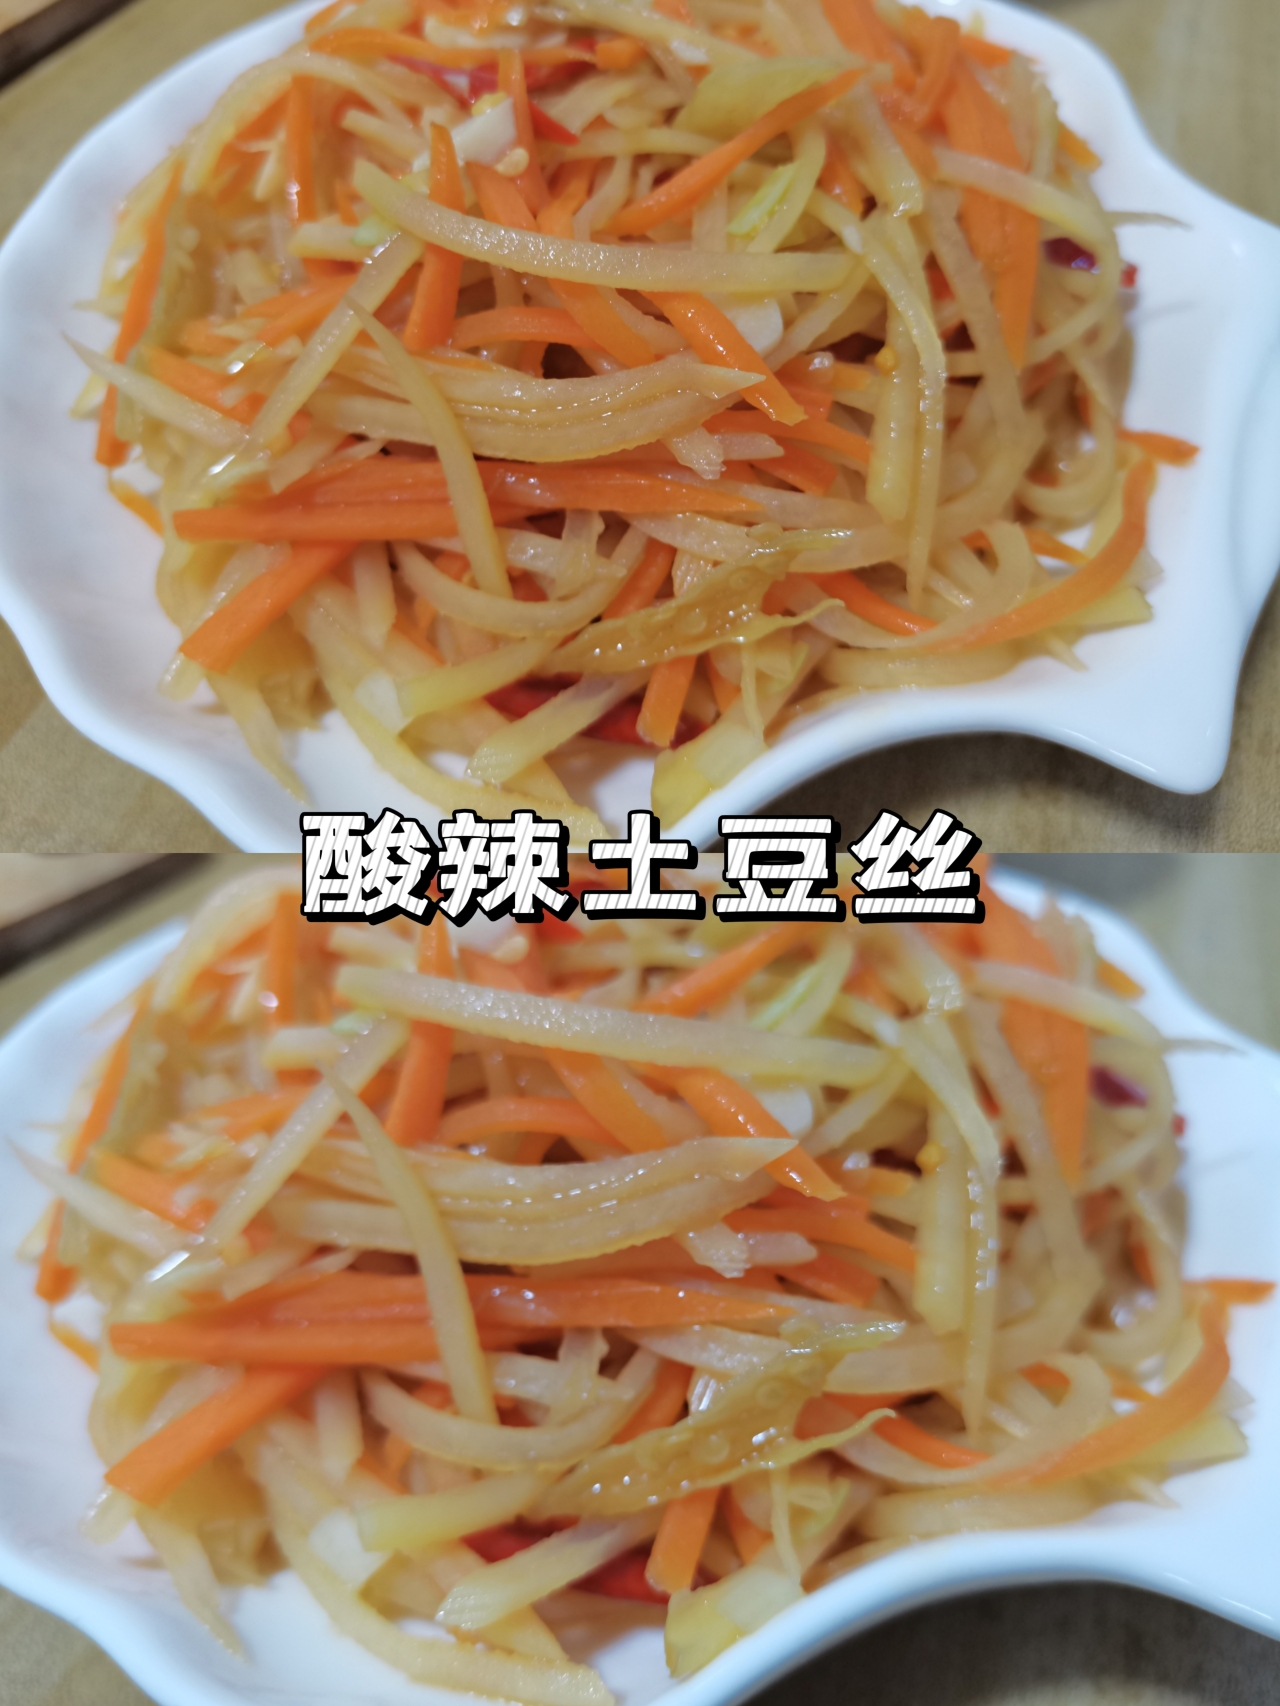 酸辣土豆丝🥔家常菜第1名的做法